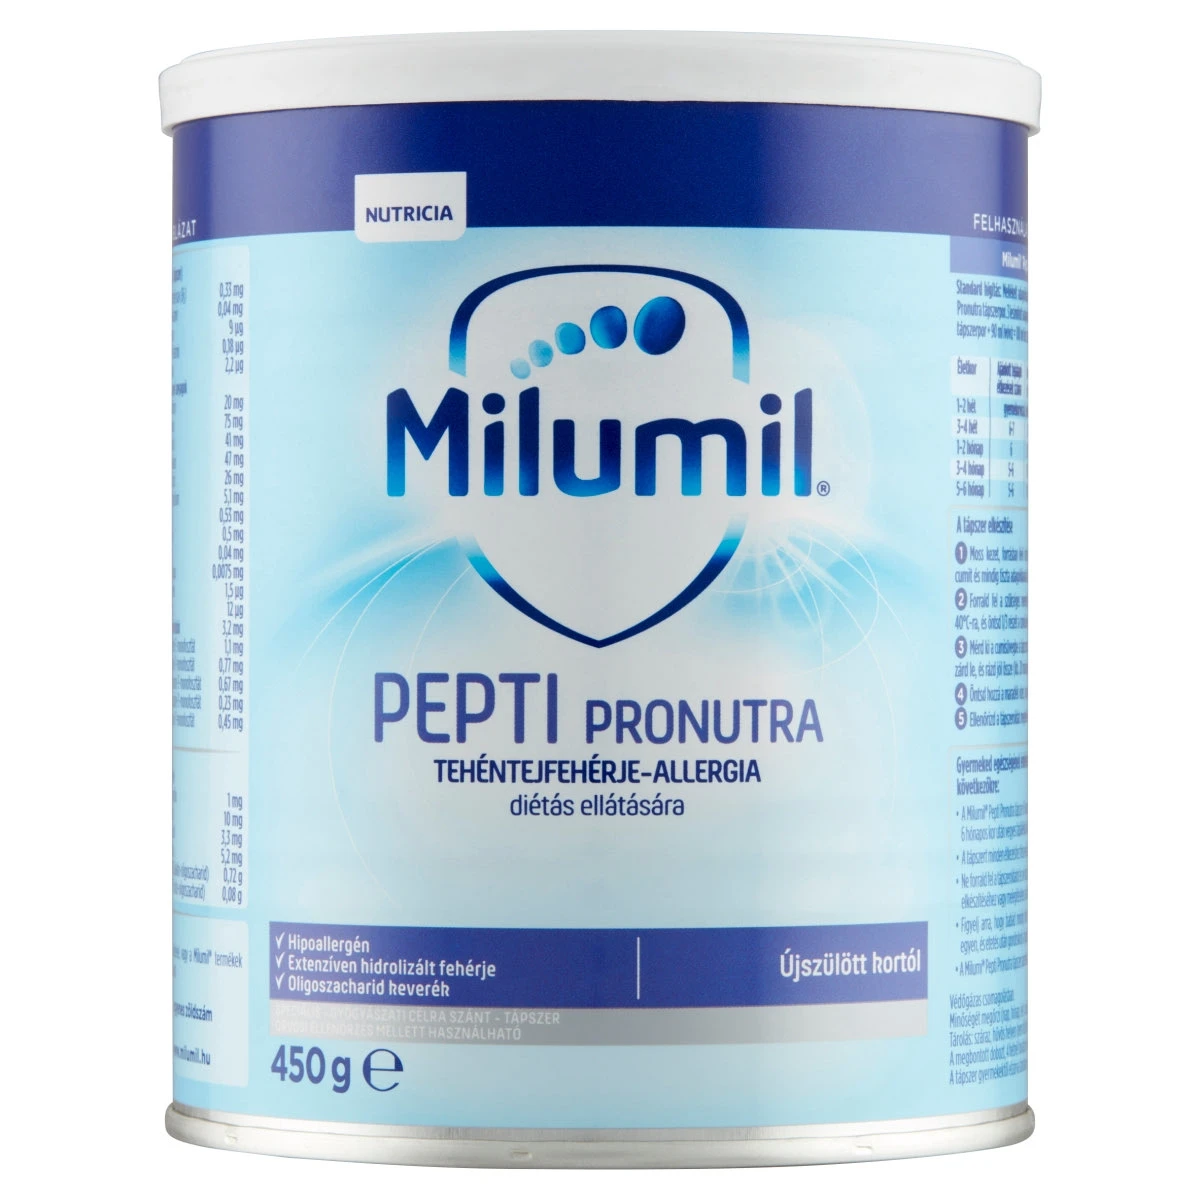 Milumil Pepti Pronutra speciális  gyógyászati célra szánt  tápszer újszülött kortól 450 g